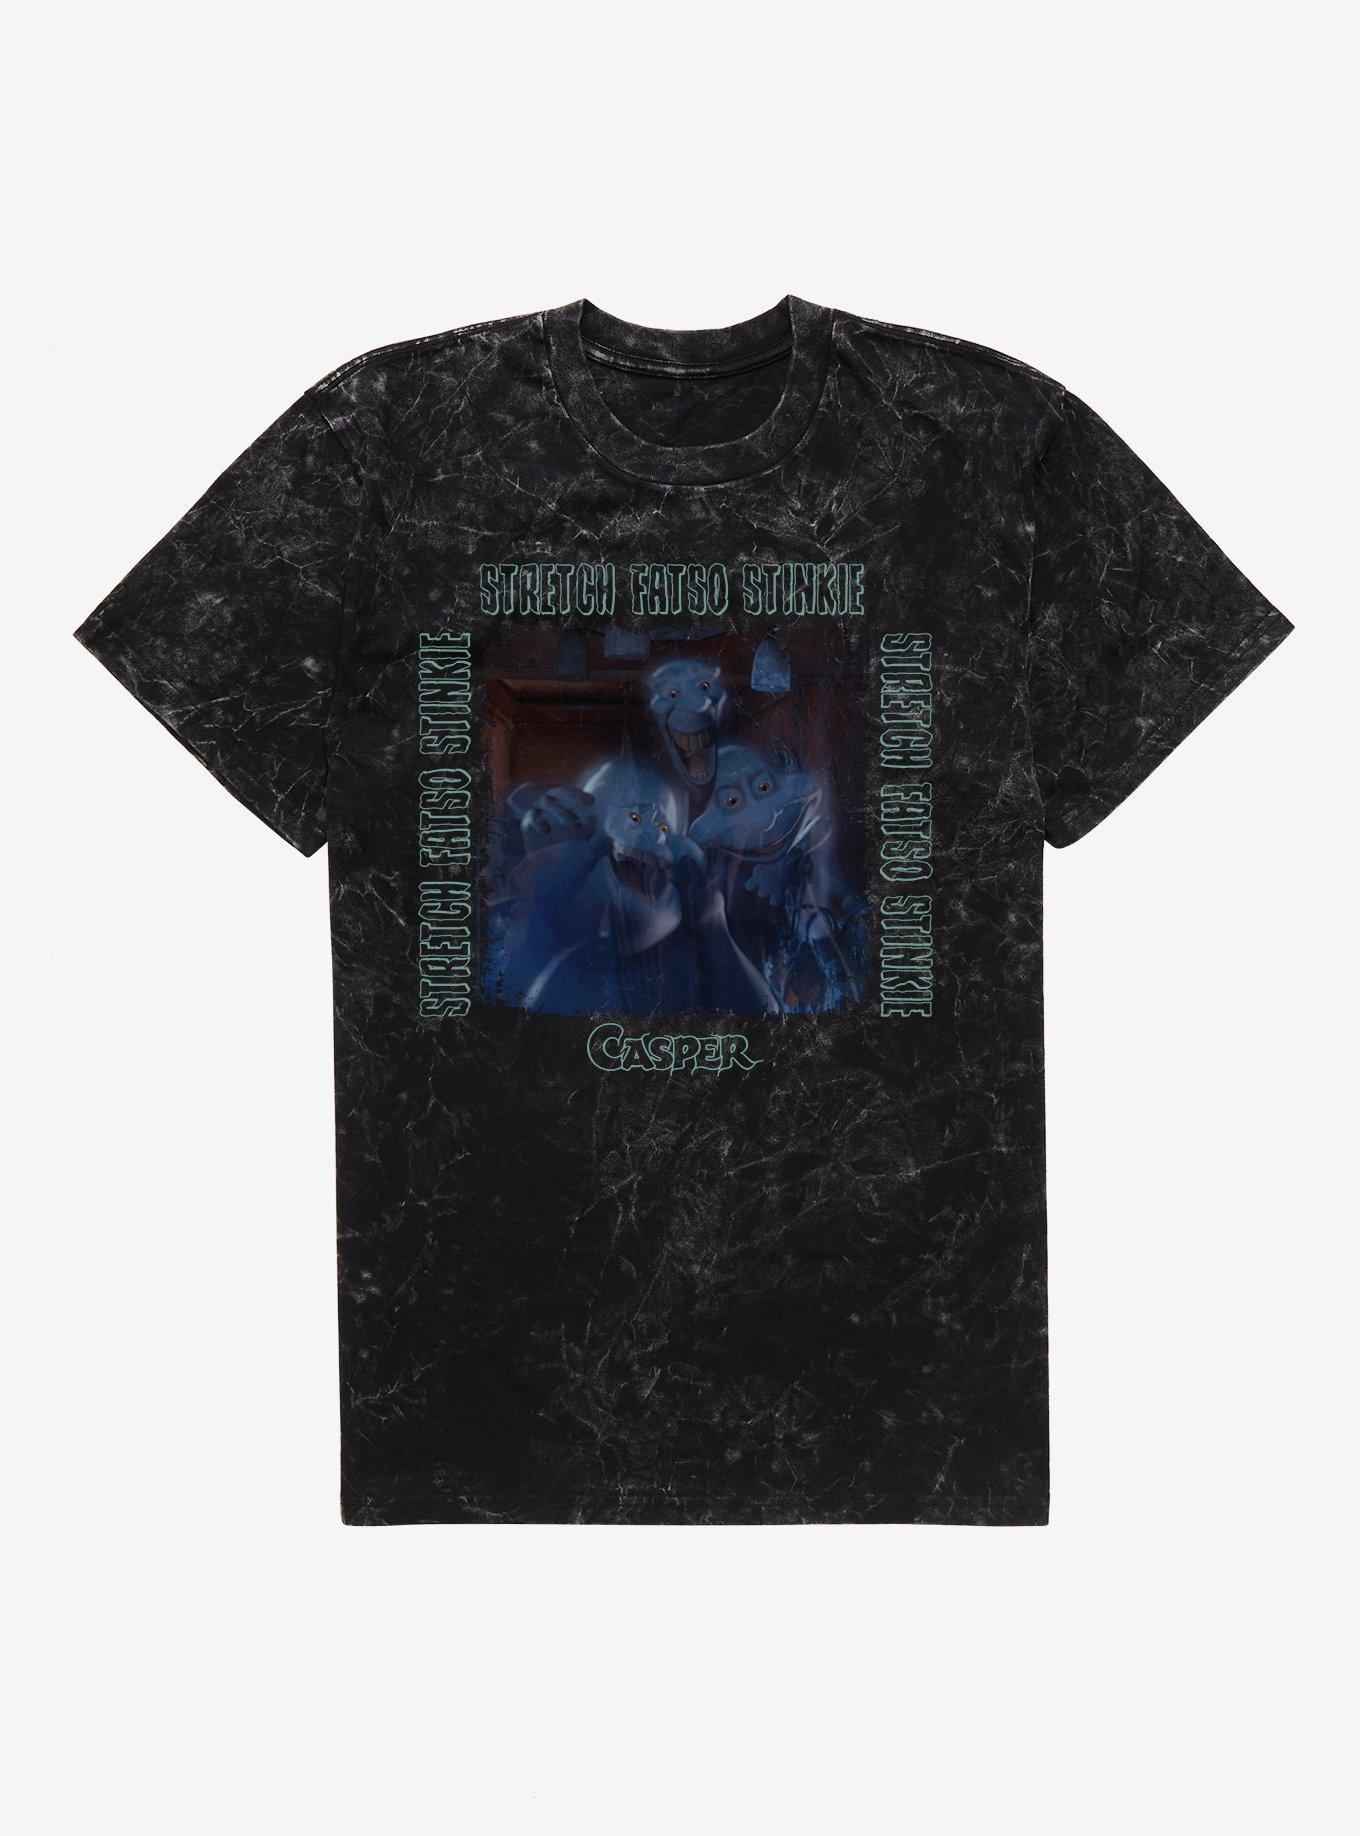 Casper Stretch Fatso Stinkie Mineral Wash T-Shirt, BLACK MINERAL WASH, hi-res